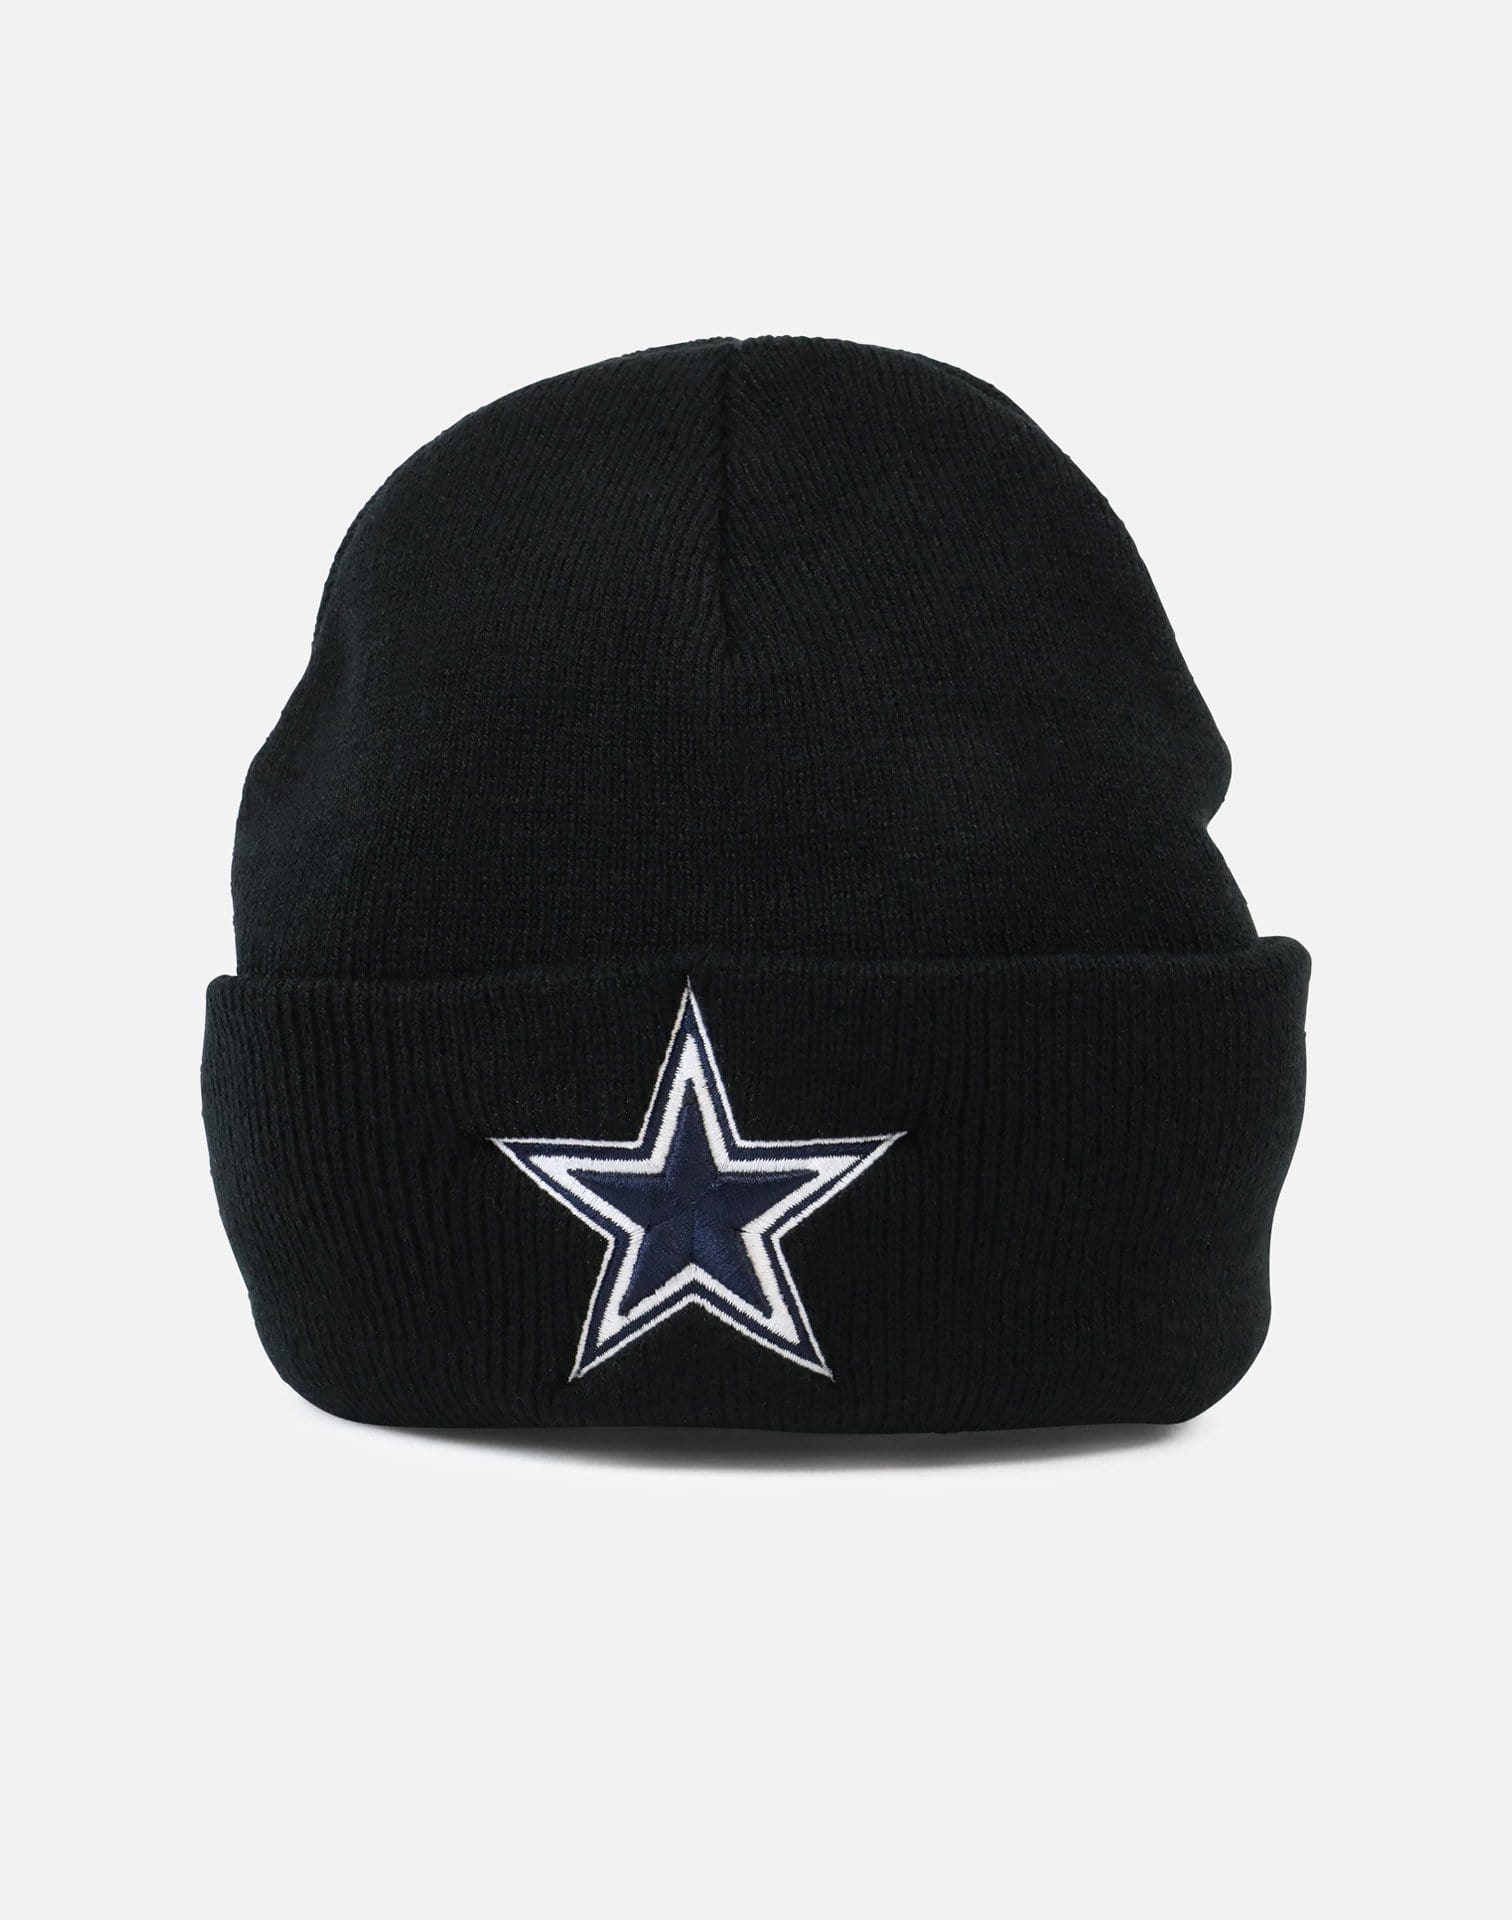 Dallas Cowboys Basic Cuff Knit Beanie (Black)